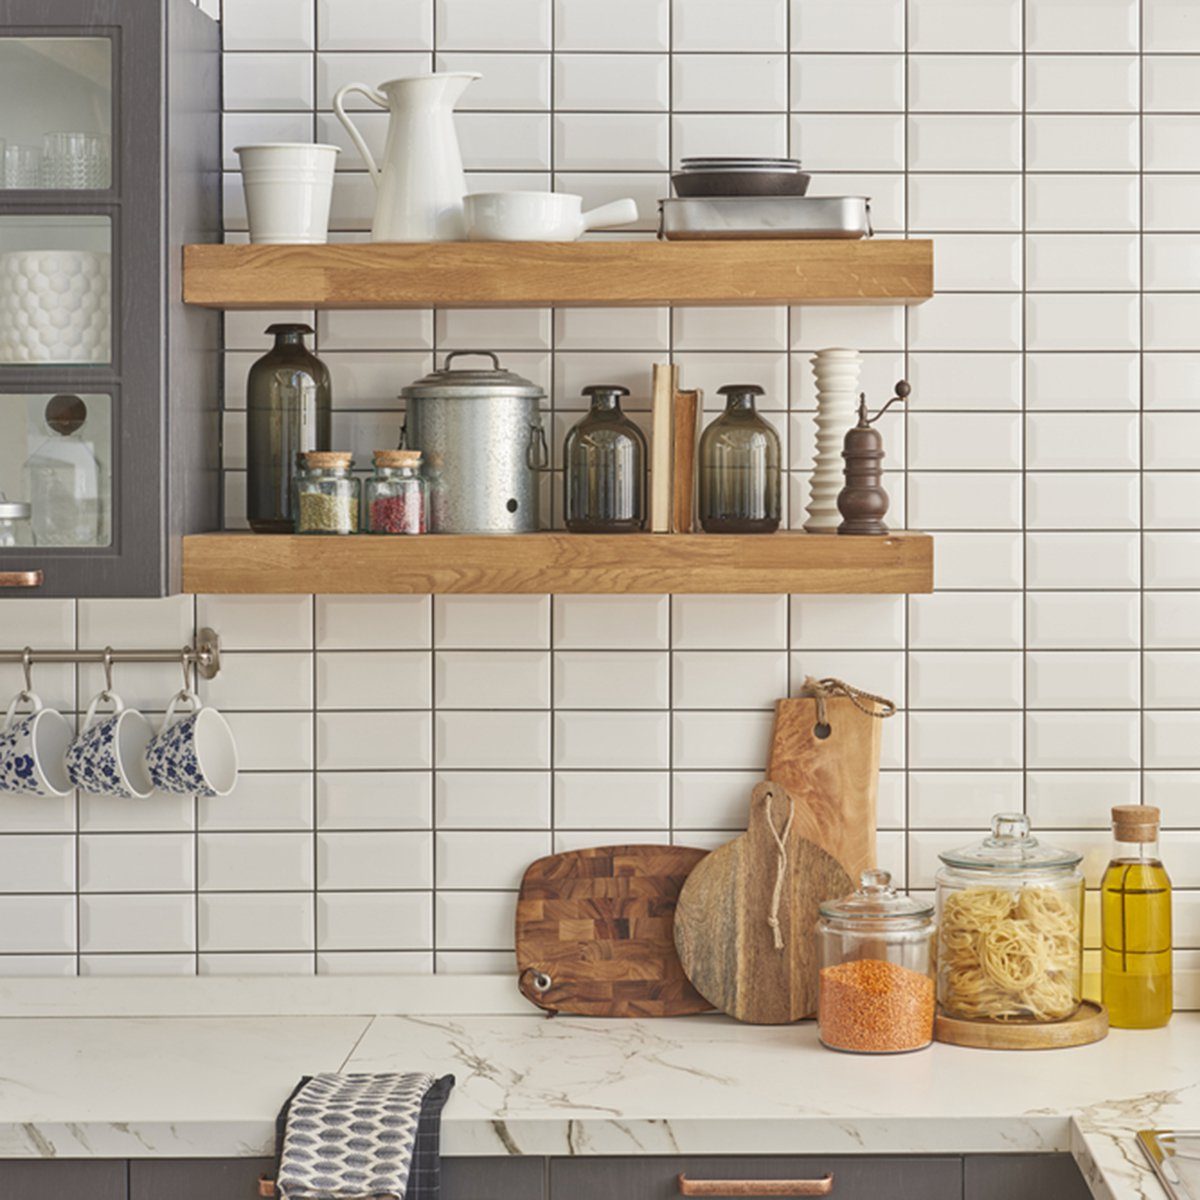 10 Ways to Organize Your Kitchen Like Marie Kondo | Reader's Digest